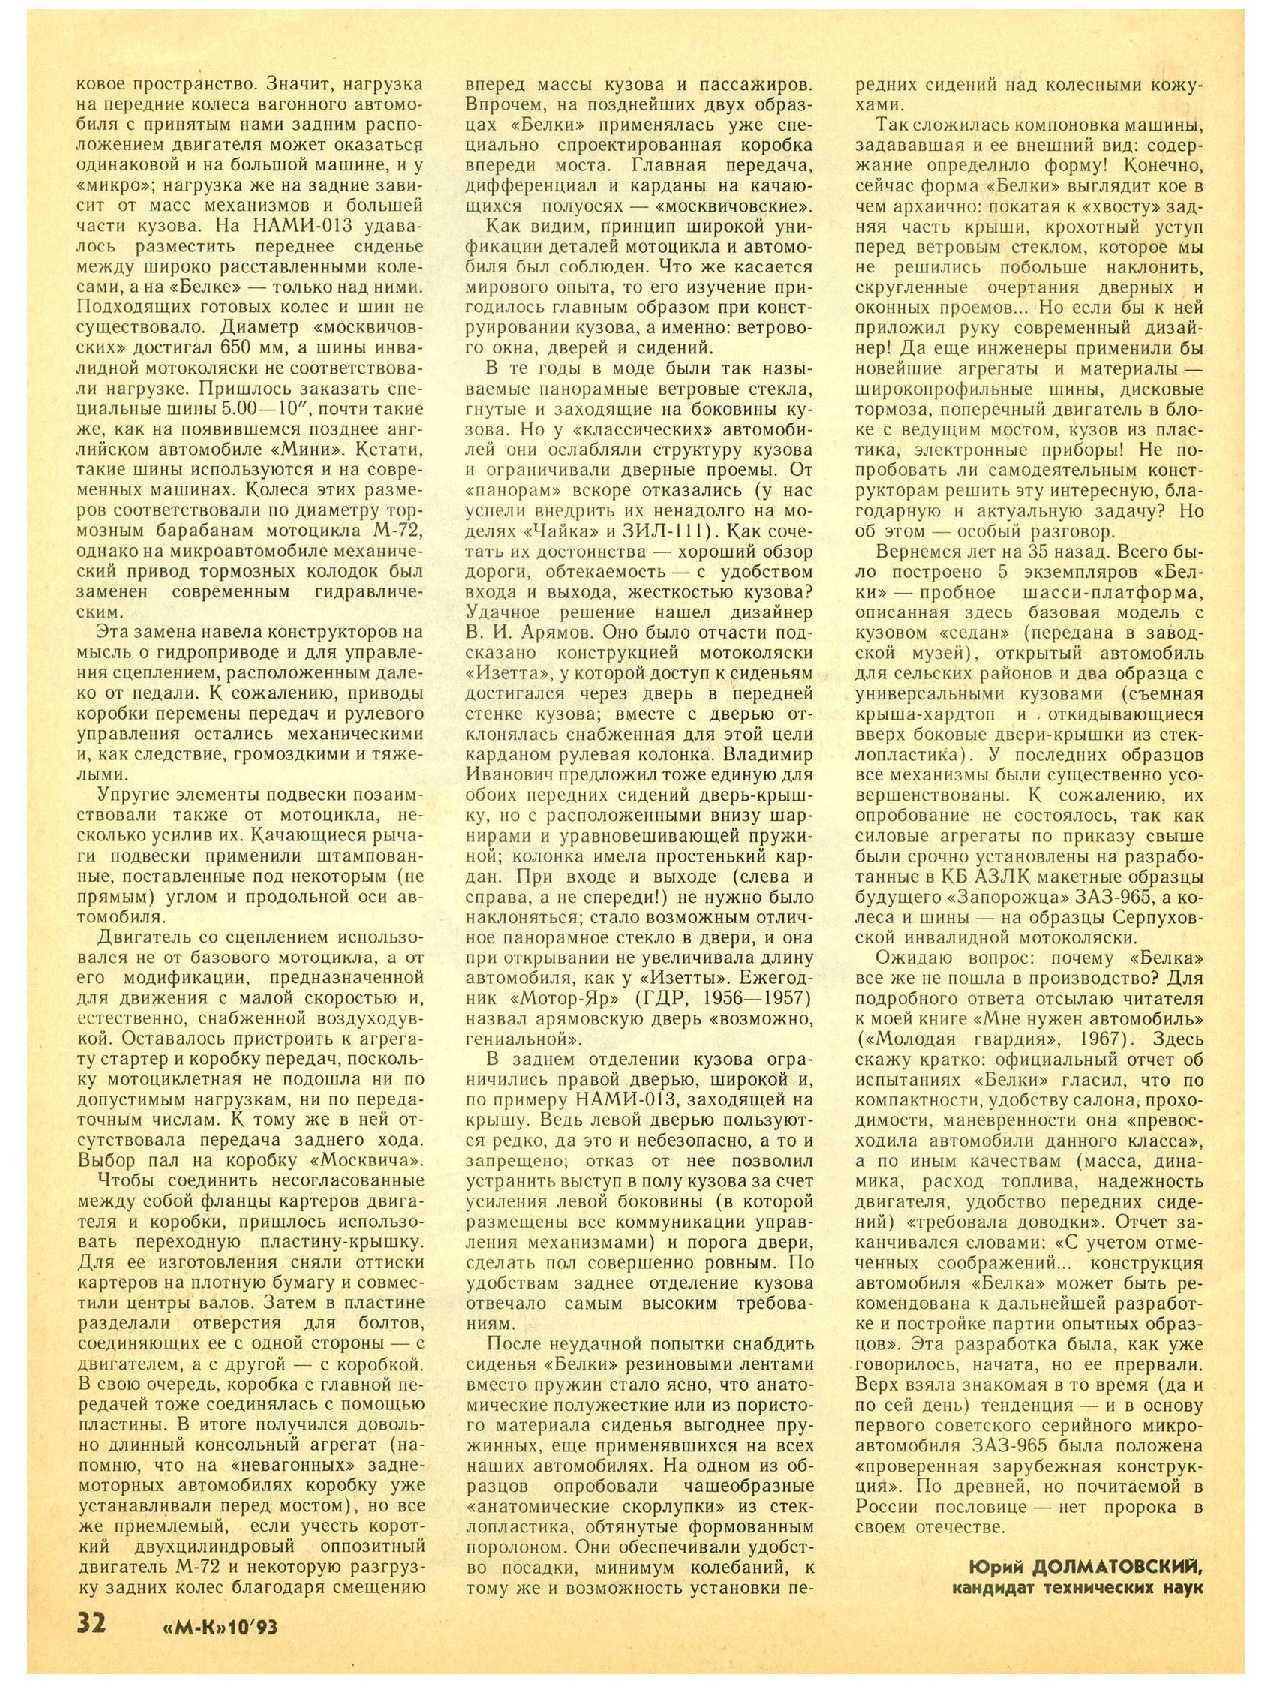 МК 10, 1993, 32 c.